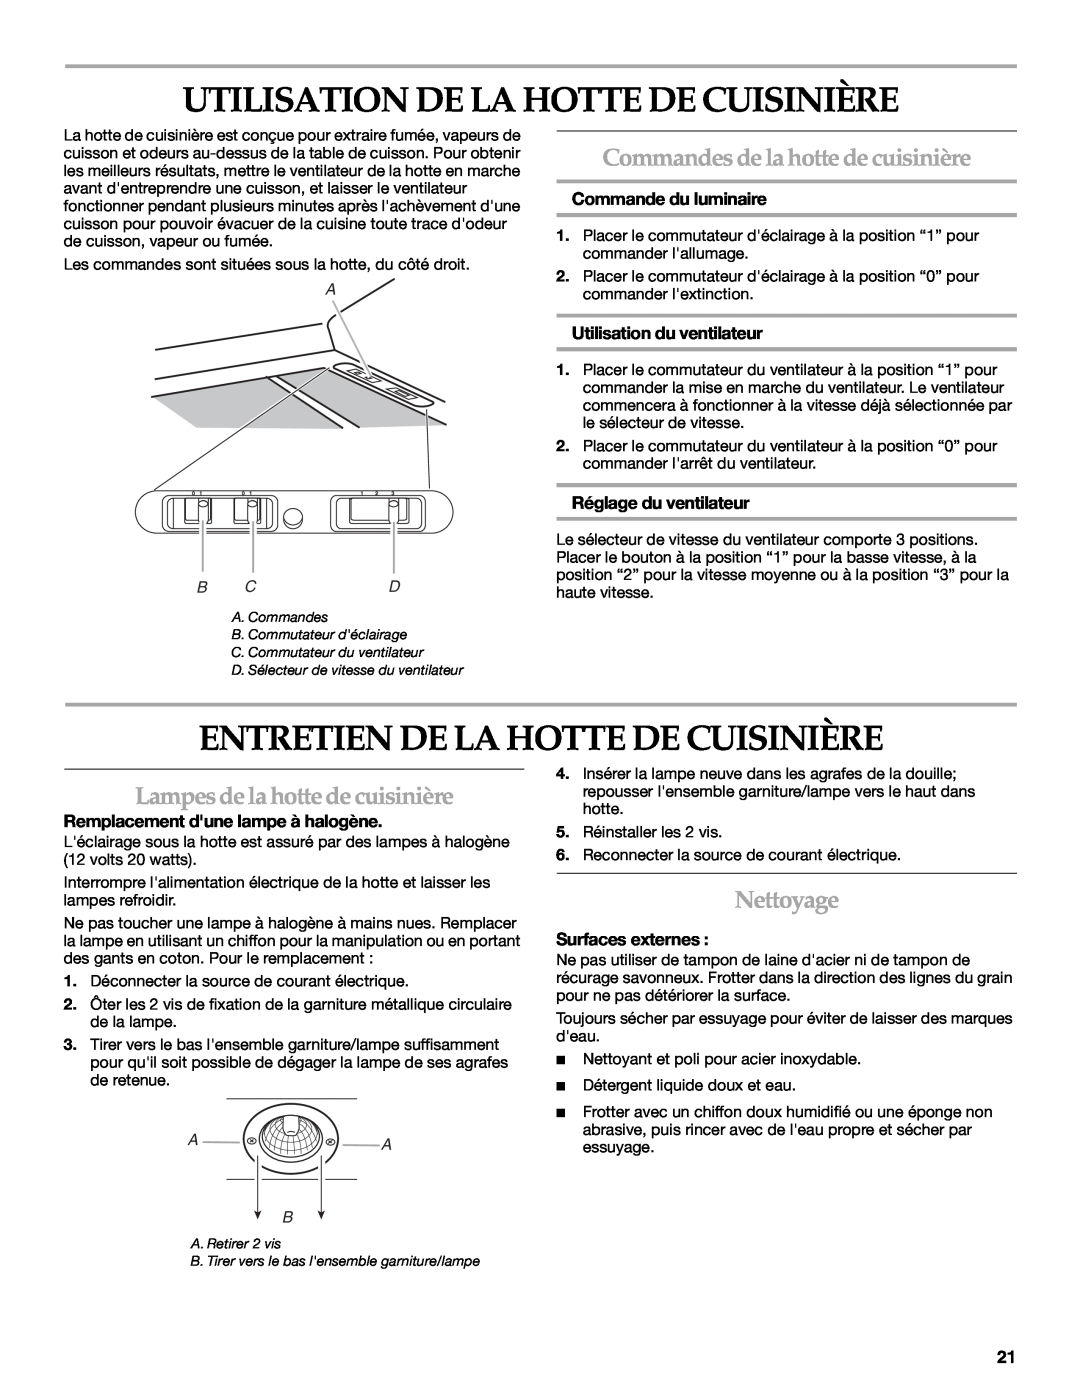 KitchenAid 2005 Utilisation De La Hotte De Cuisinière, Entretien De La Hotte De Cuisinière, Nettoyage, Surfaces externes 